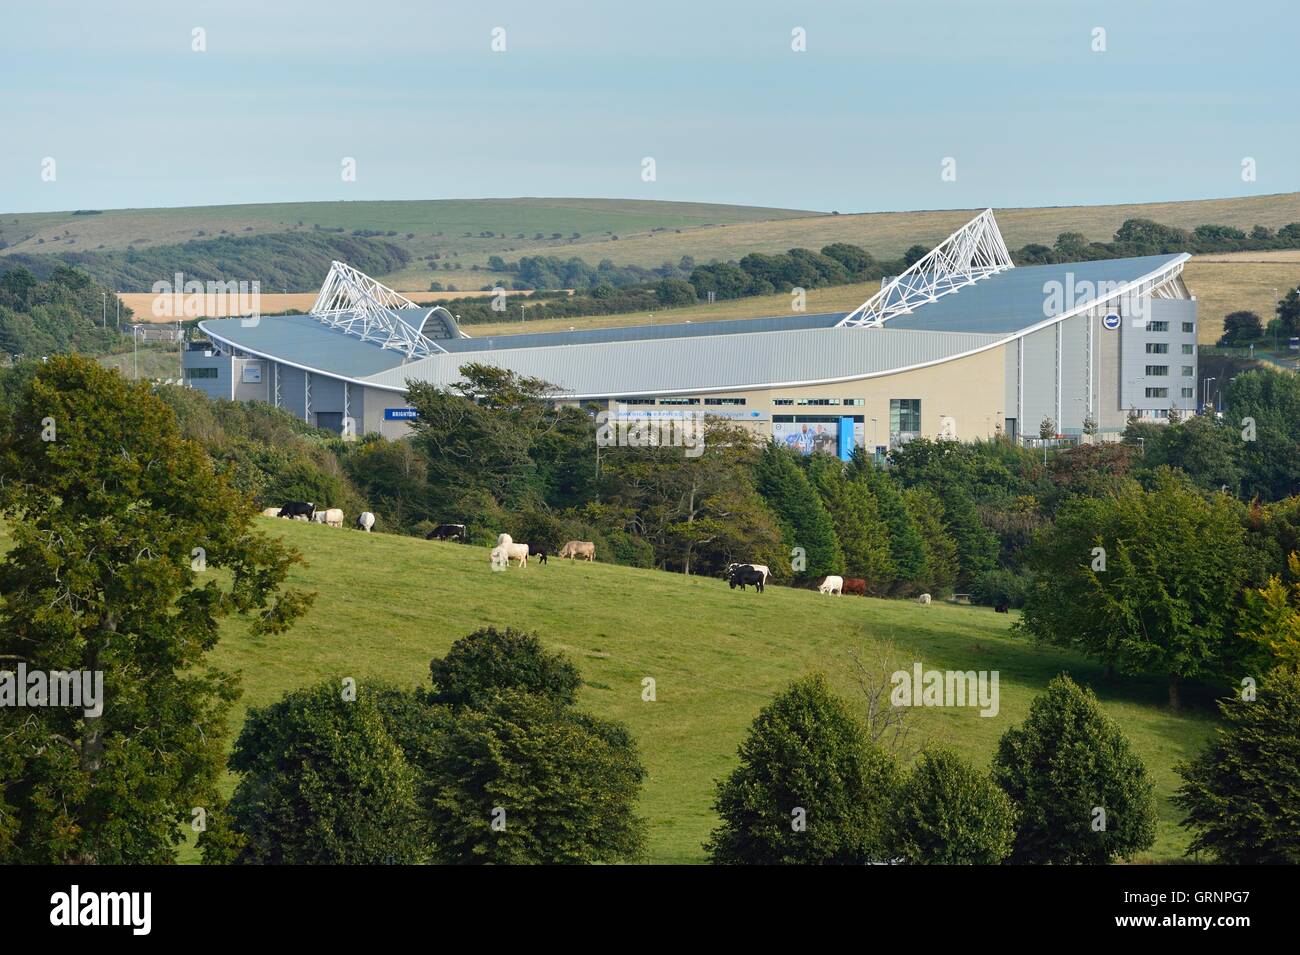 Das Brighton Fußballstadion American Express, Amex ist eingerahmt von einer eher ländlichen Szene grasende Kühe auf einem Feld Stockfoto